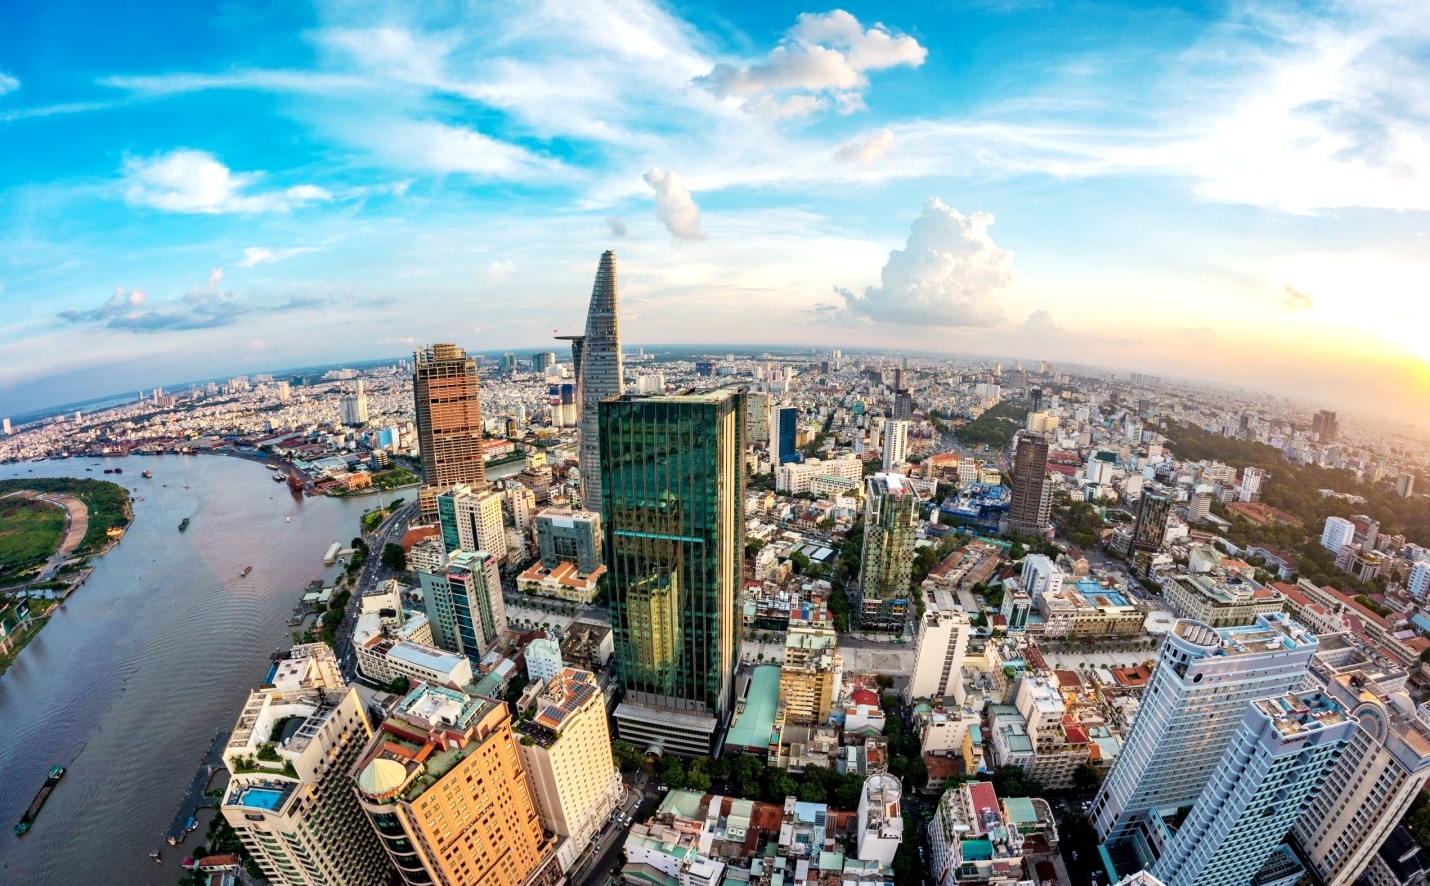 Thành phố Hồ Chí Minh: Tổng mức bán lẻ và doanh thu dịch vụ 5 tháng đạt trên 456 ngàn tỷ đồng